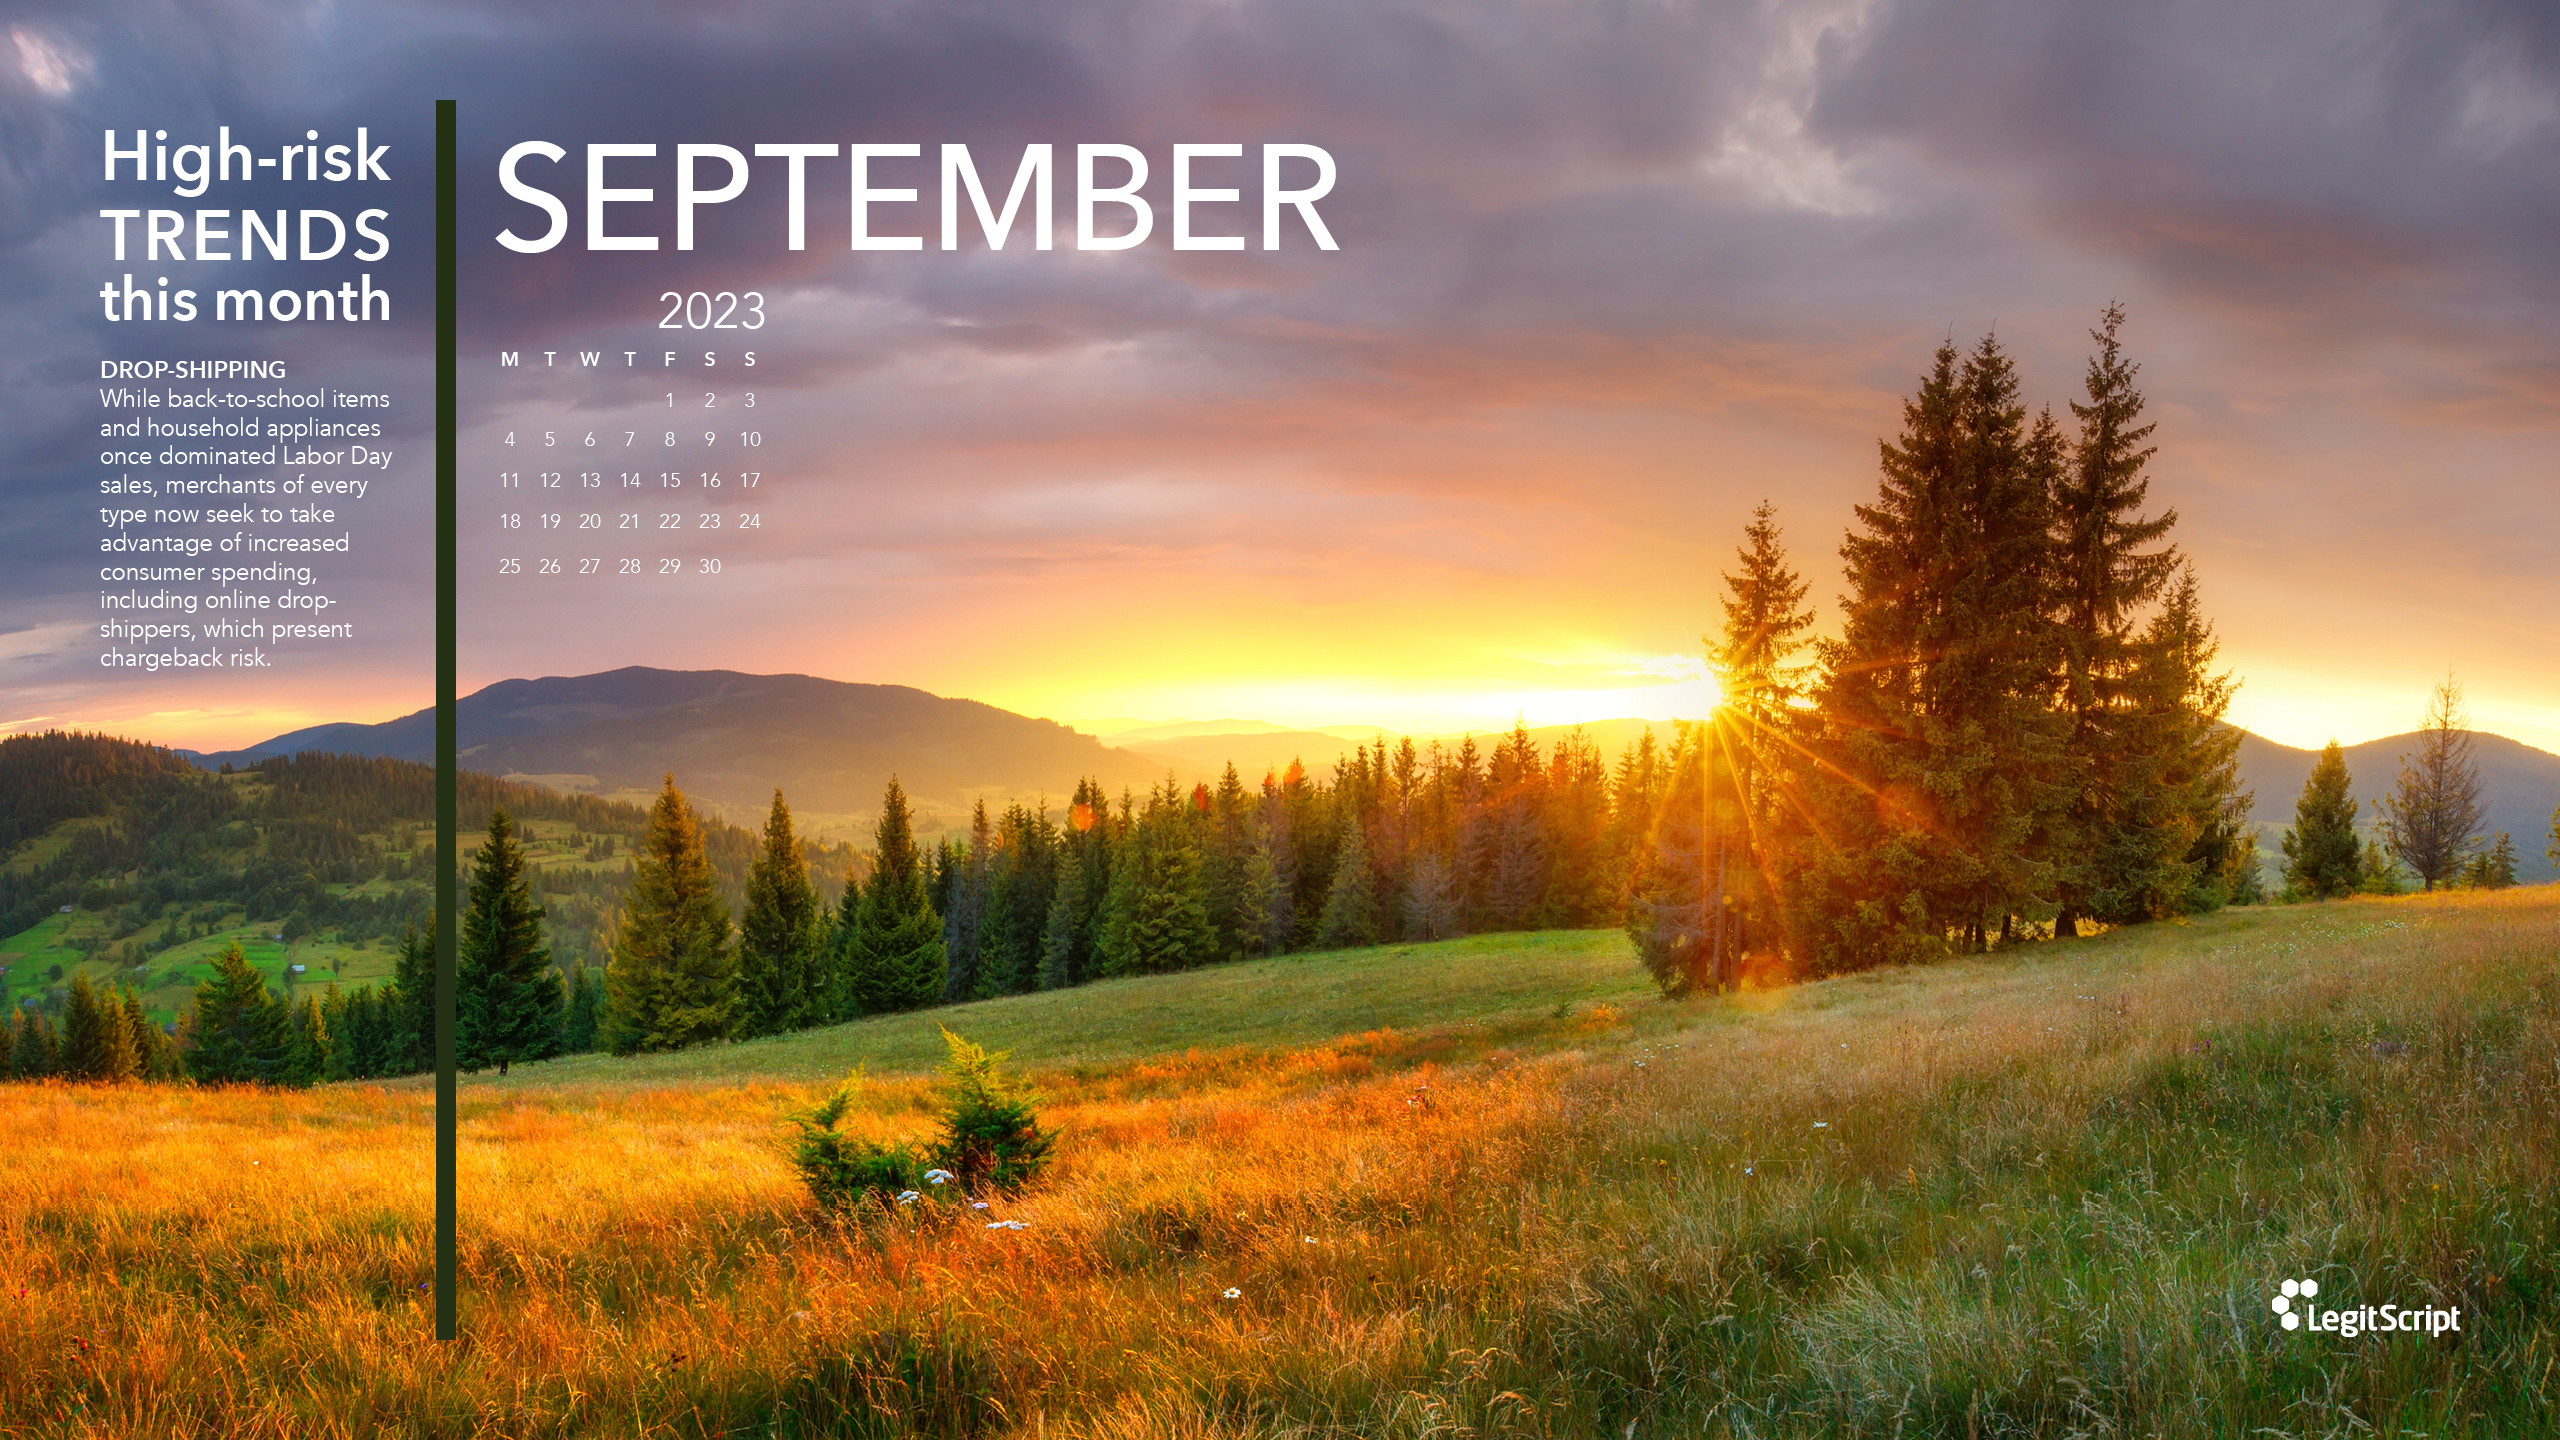 Seasonal High Risk Trends desktop background for September 2.